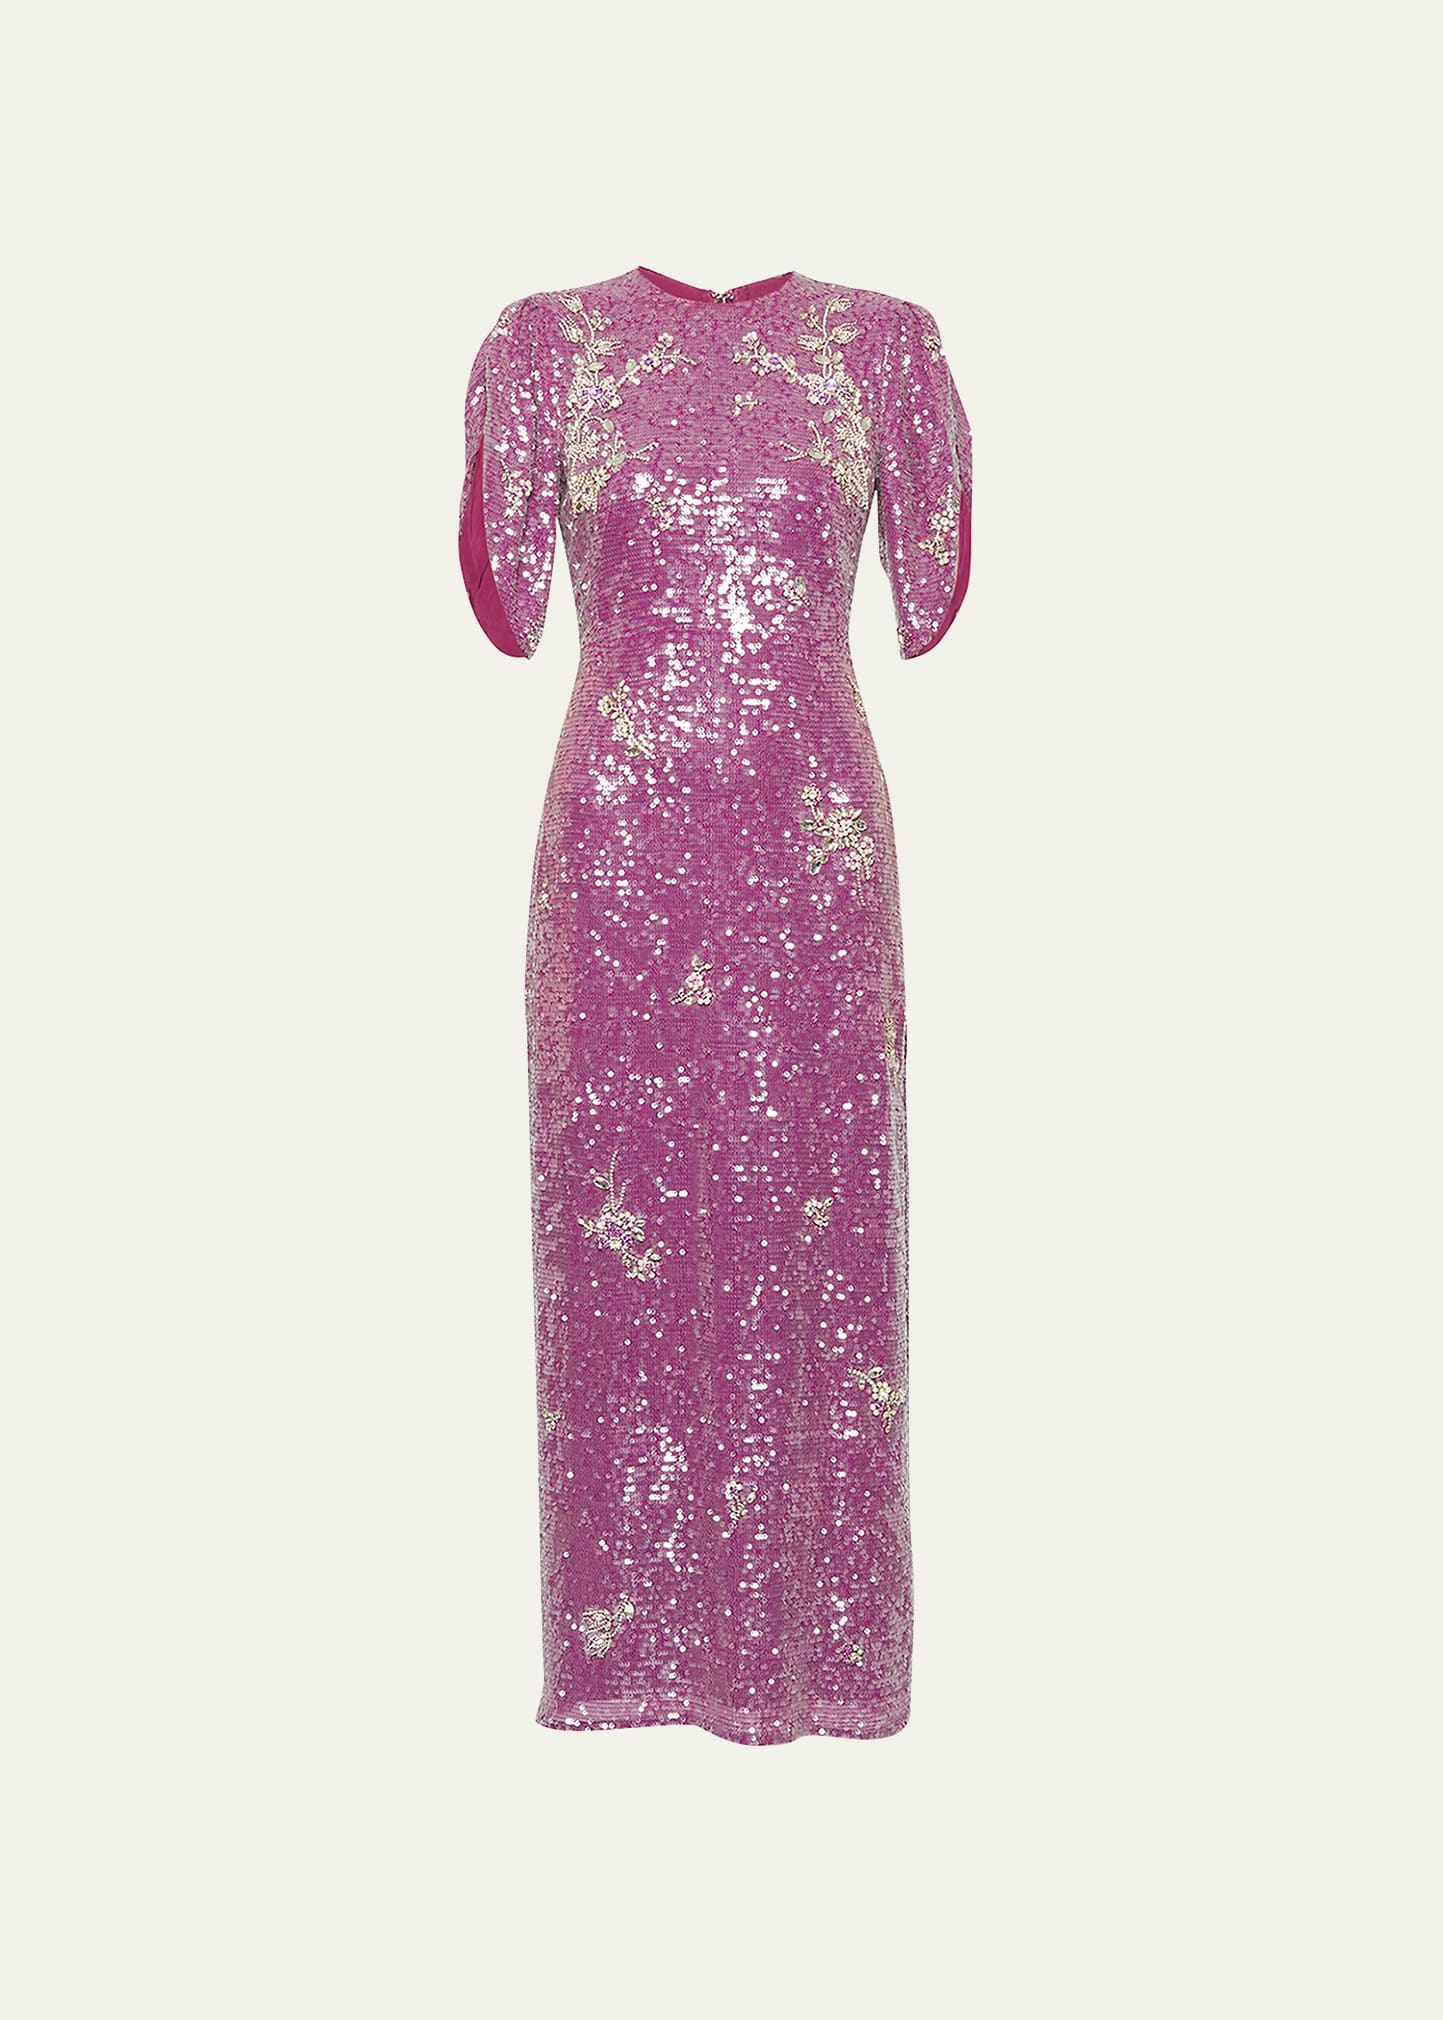 Erdem Sequin-Embellished Beaded Dress